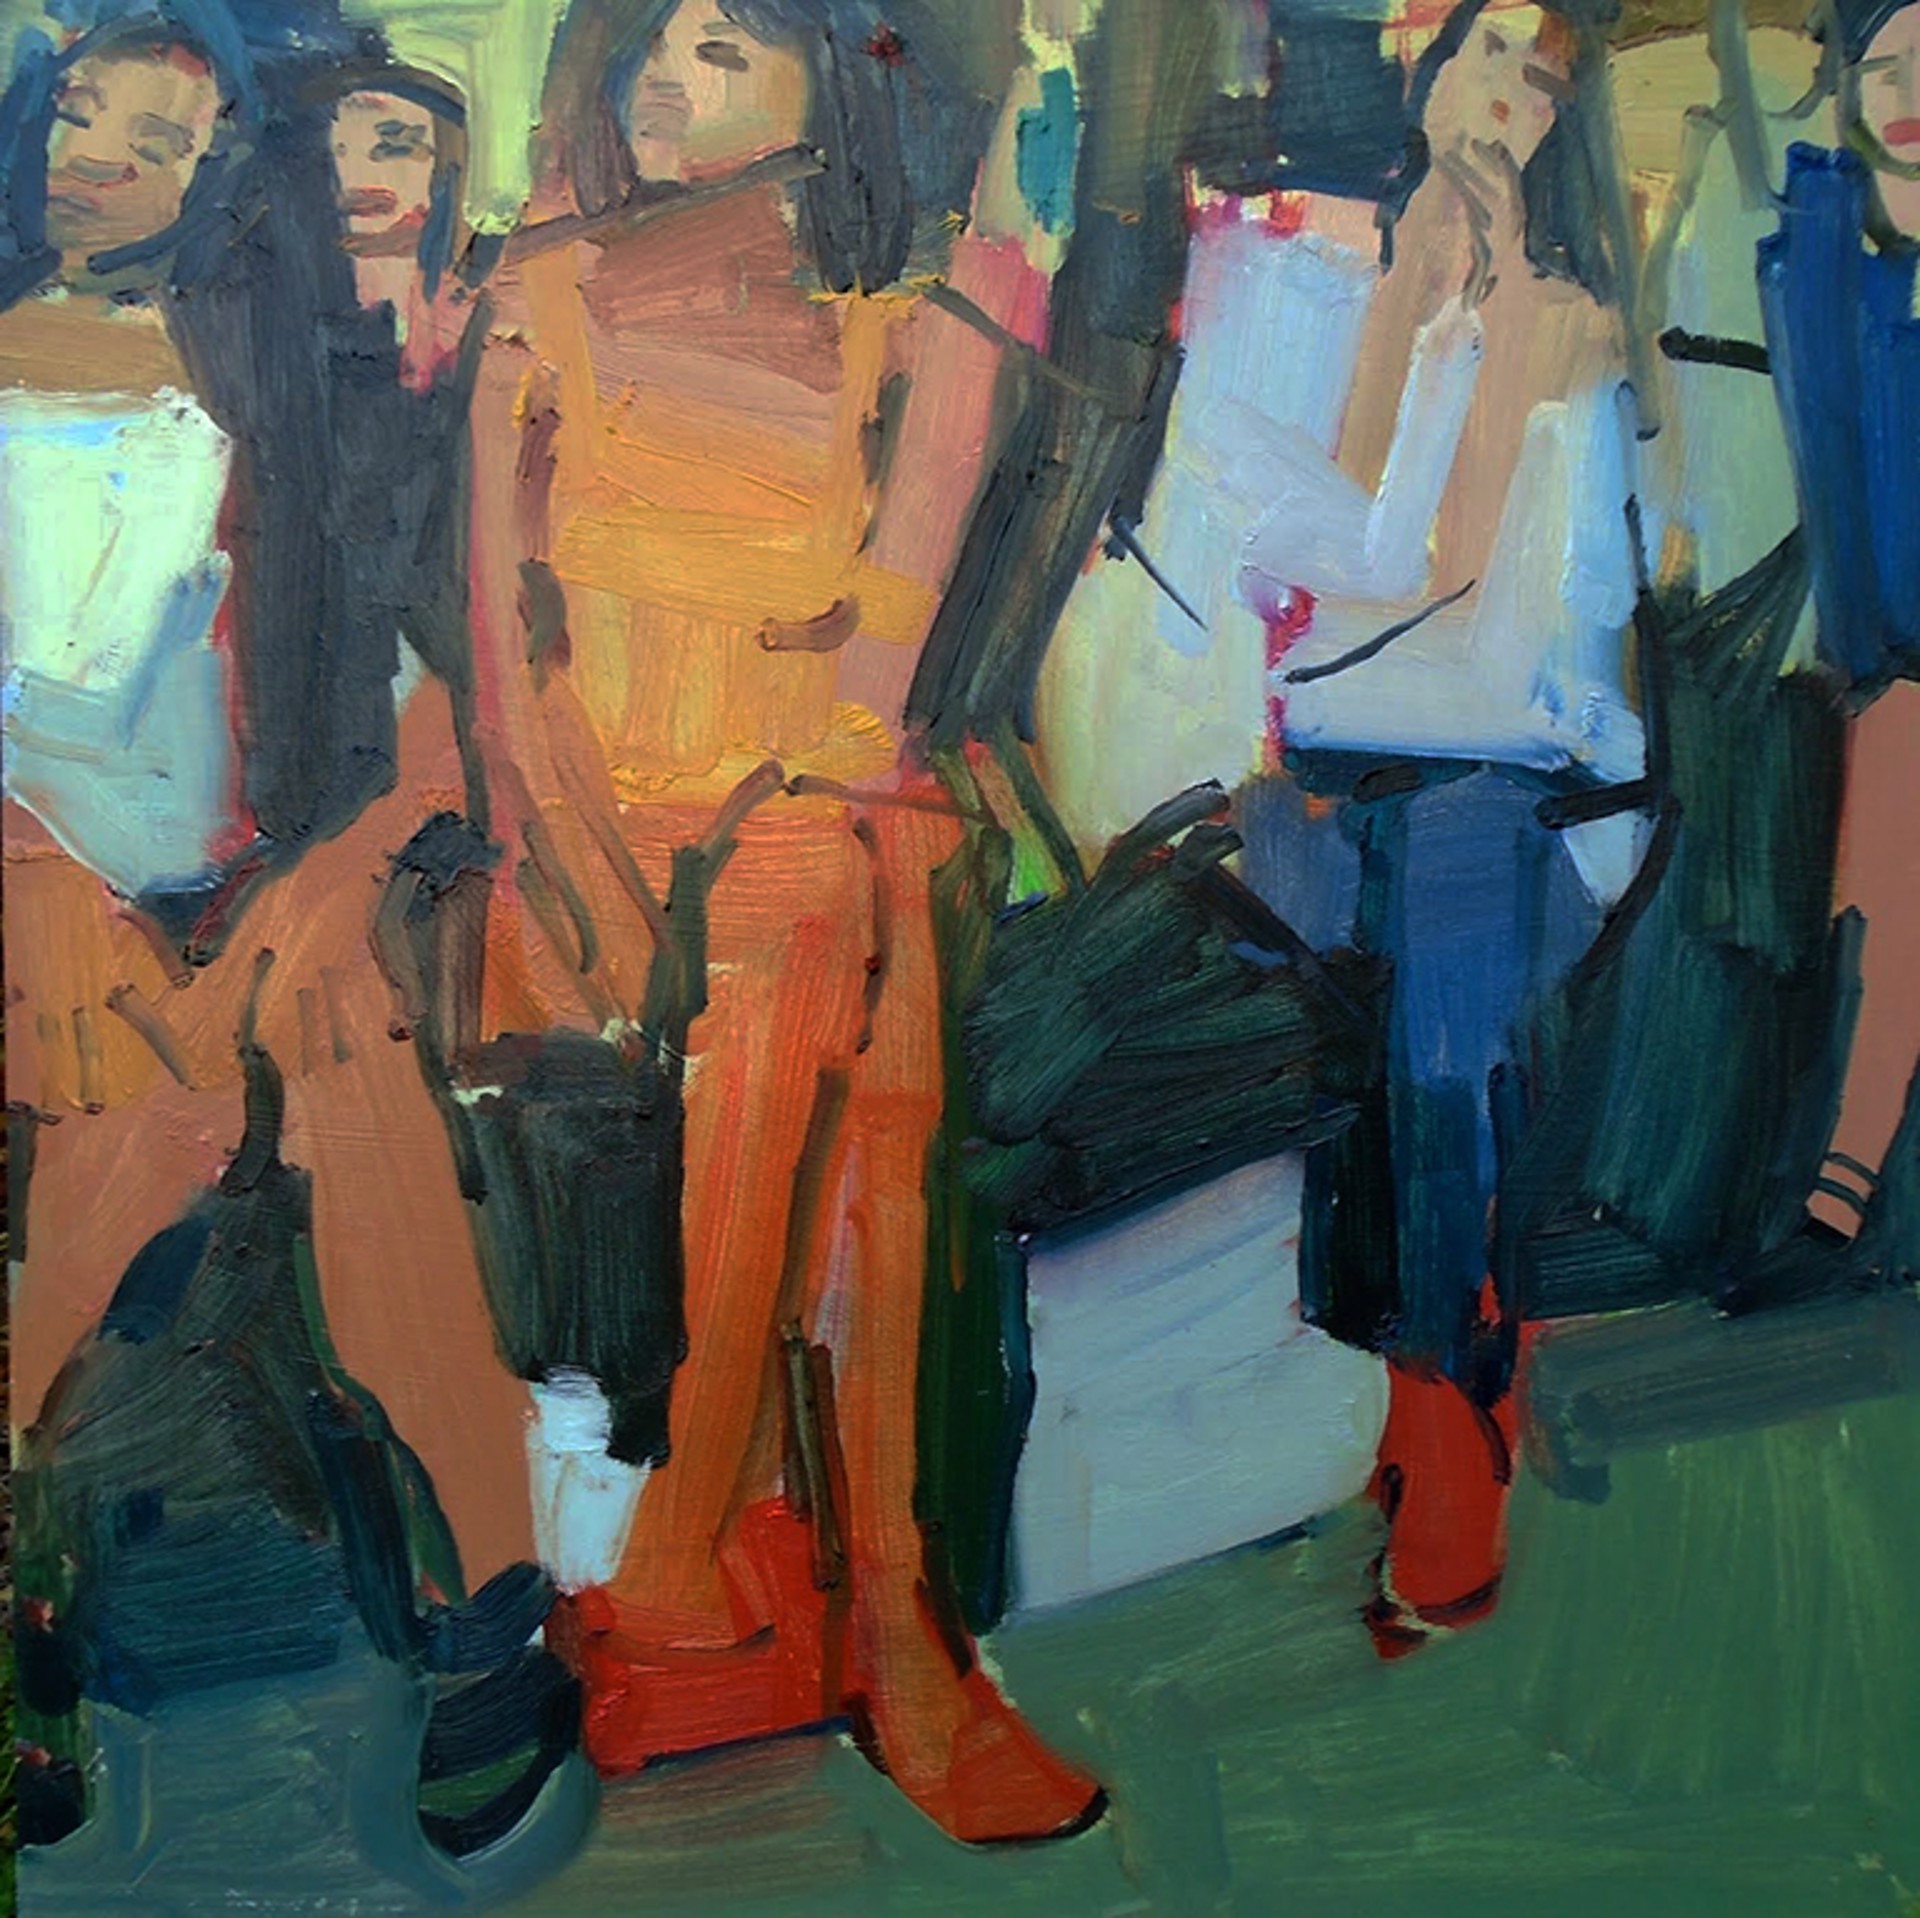 The Spectators by Jennifer Pochinski